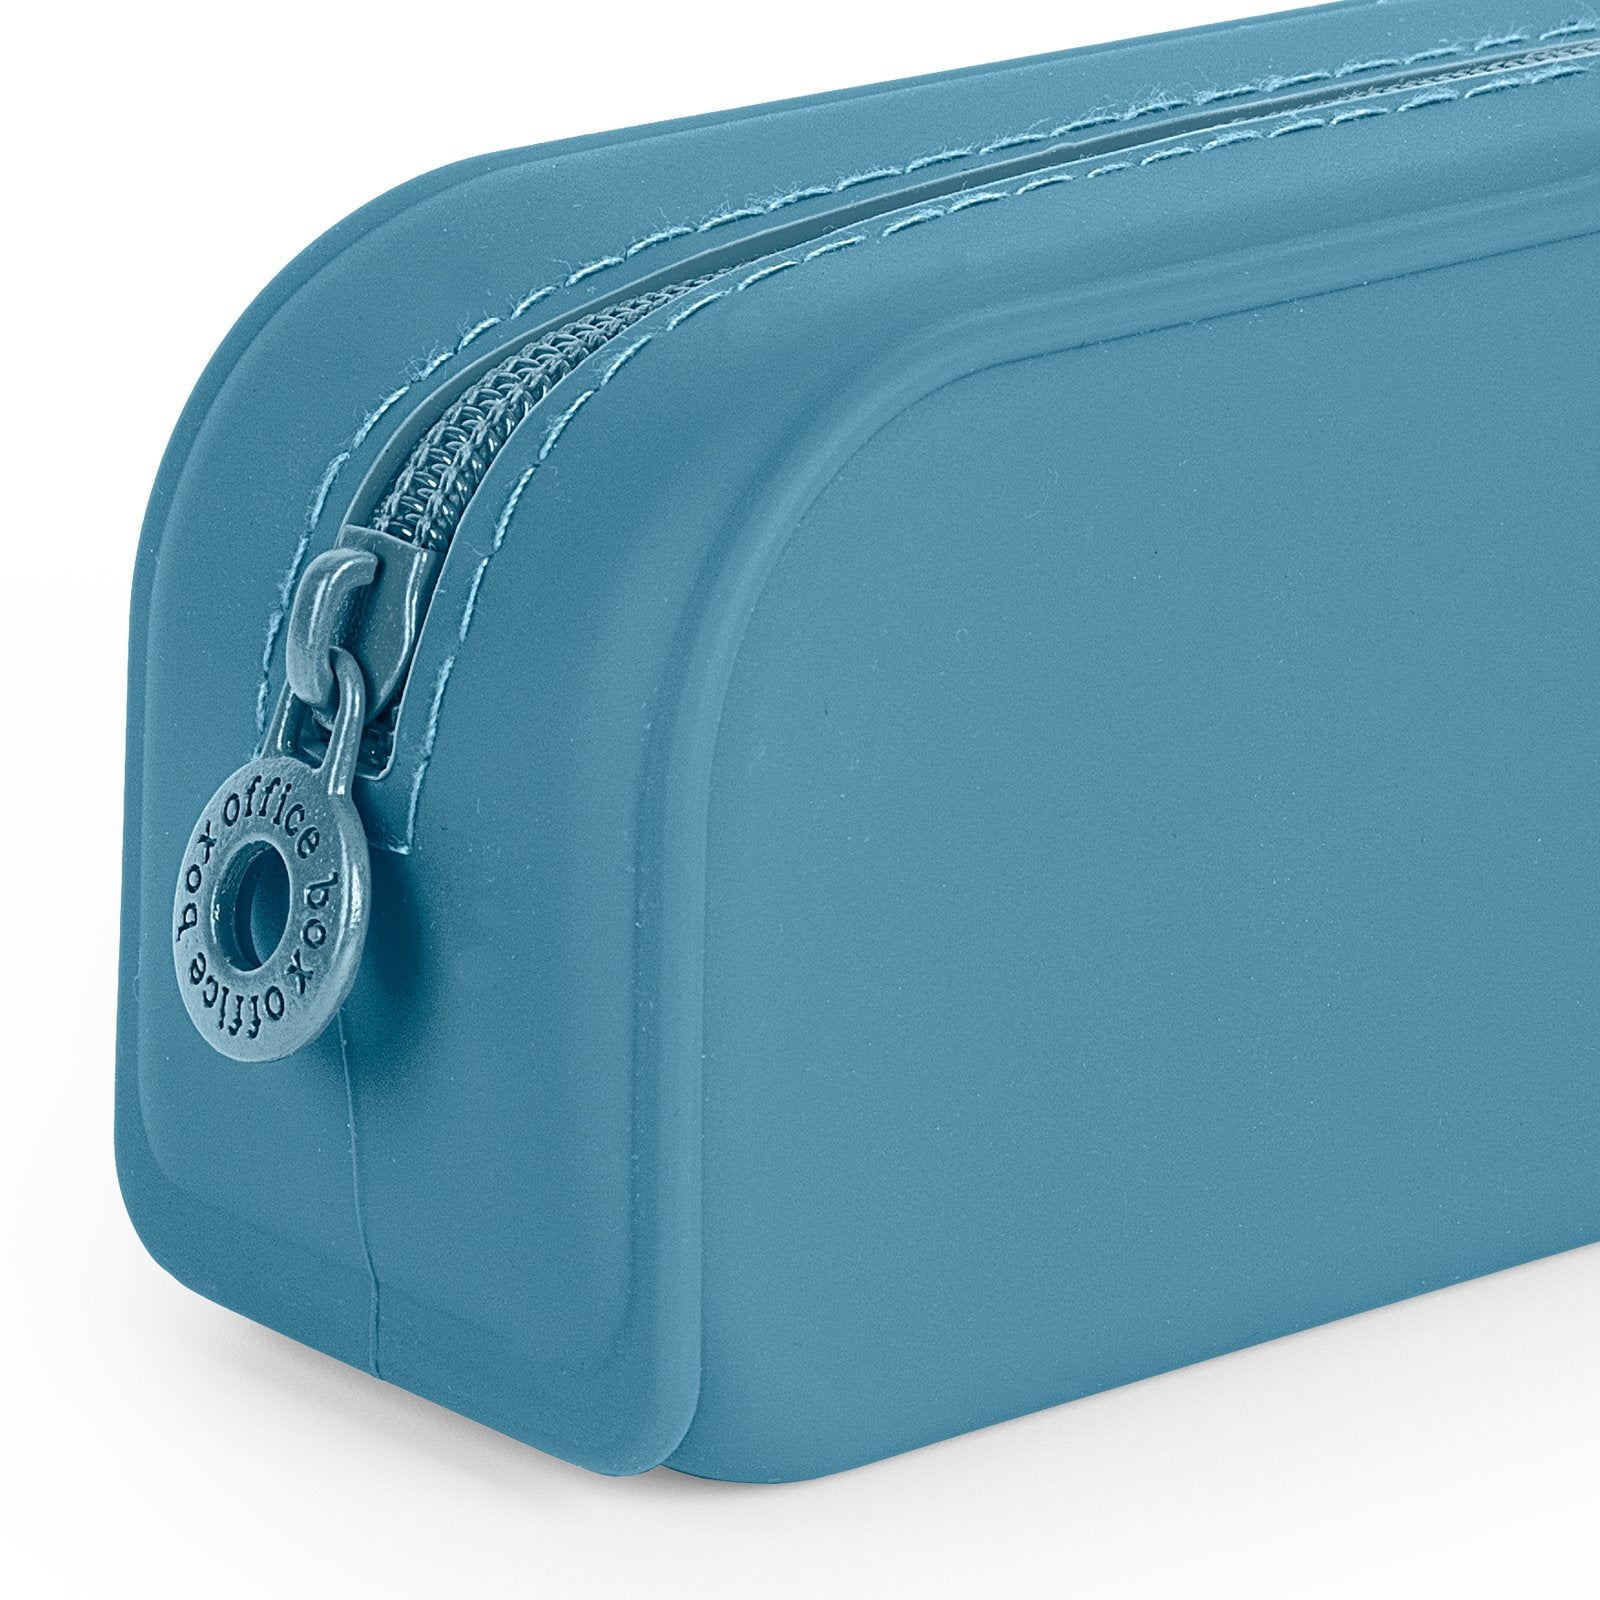 Estuche Multiuso en Silicona con Tacto Ultra Soft, Edición Vital Colors. Azul